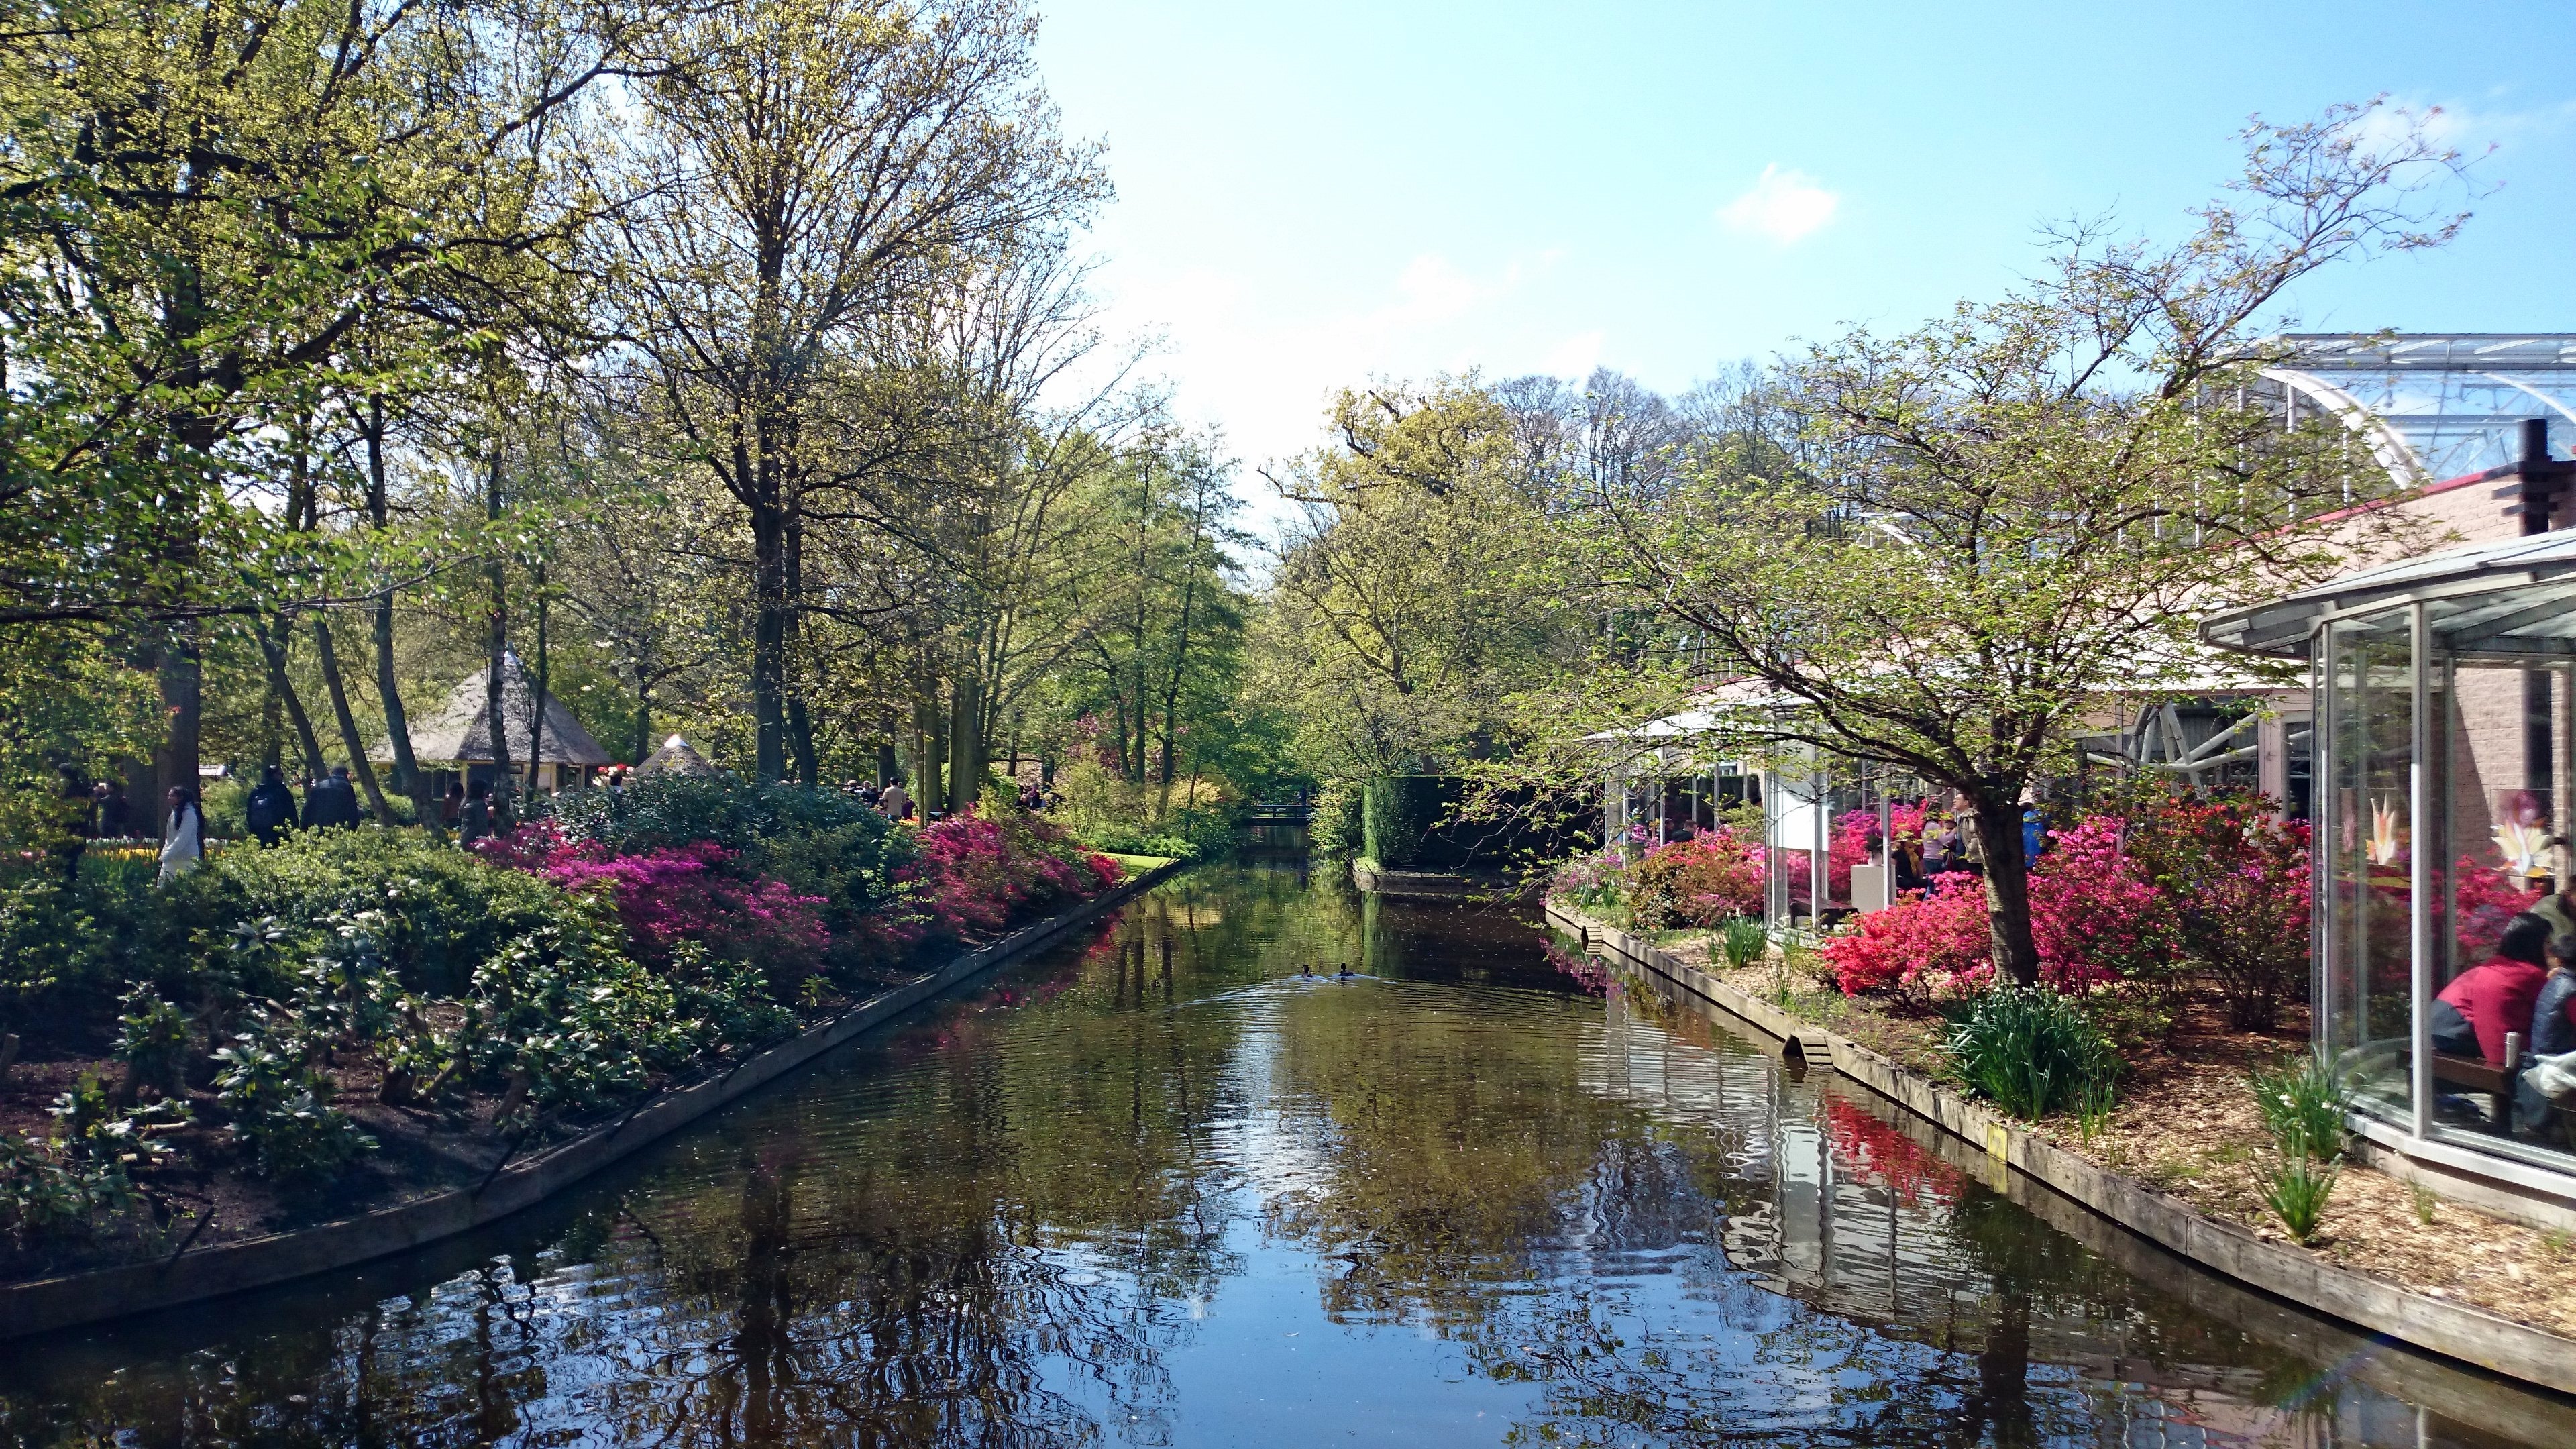 Keukenhof Flower Gardens : Lisse – Netherlands | Visions ...
